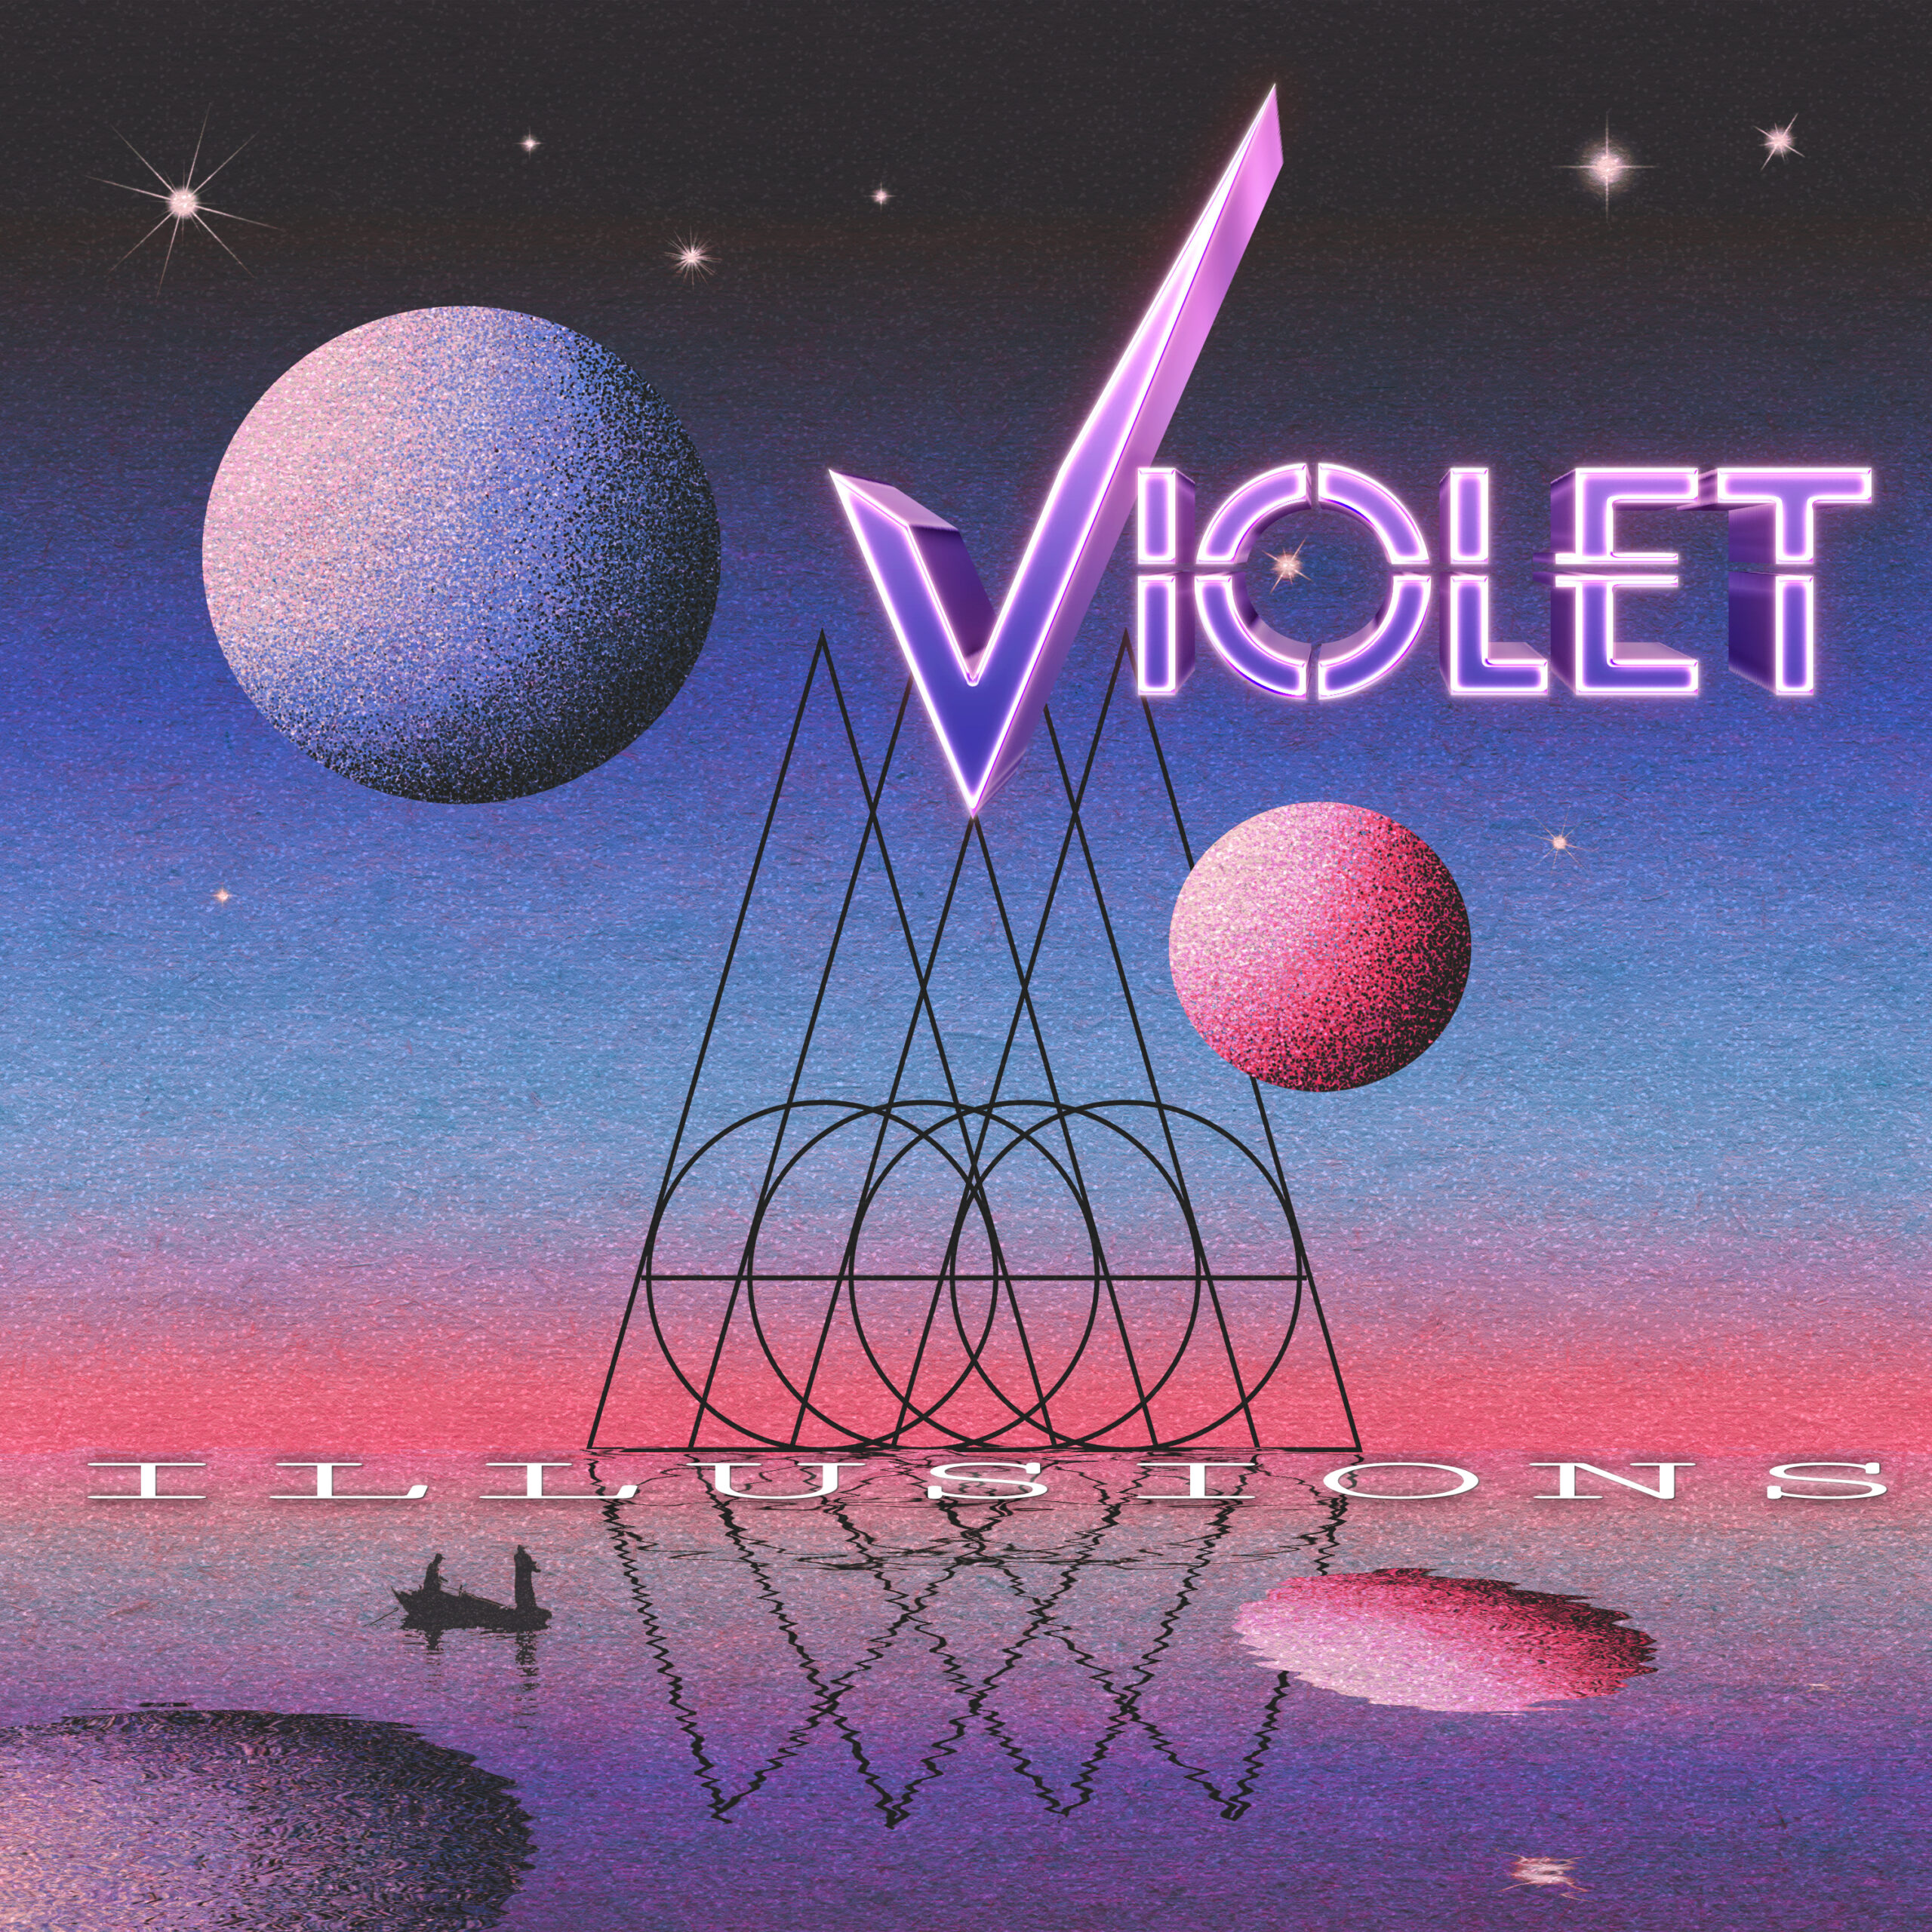 Violet-Album-Cover-Debut-scaled.jpg